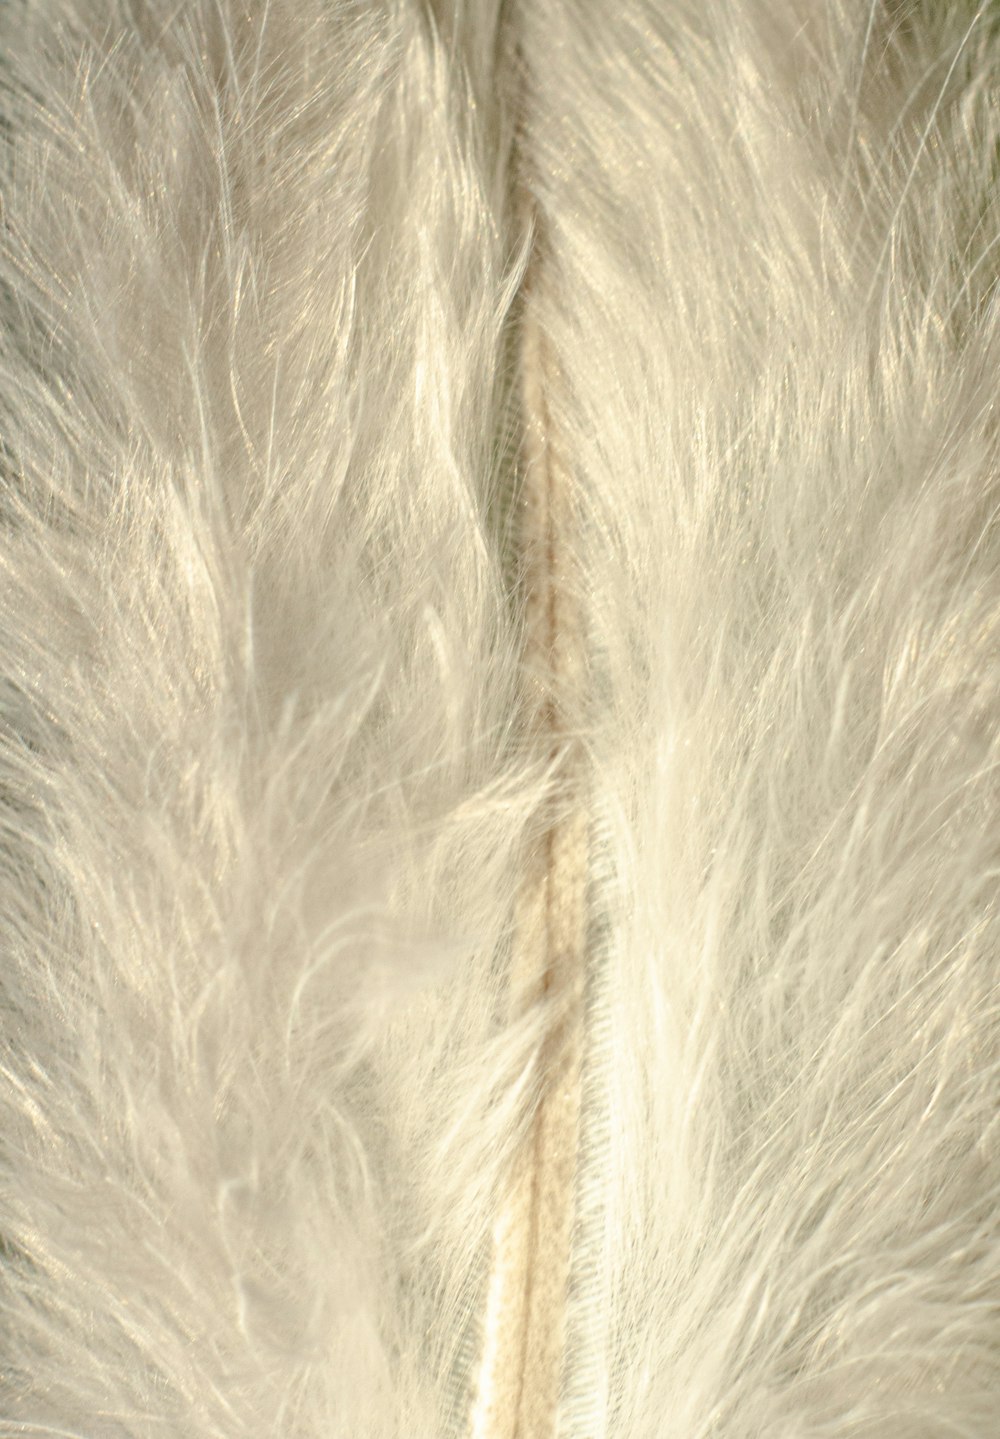 white fur textile on brown textile